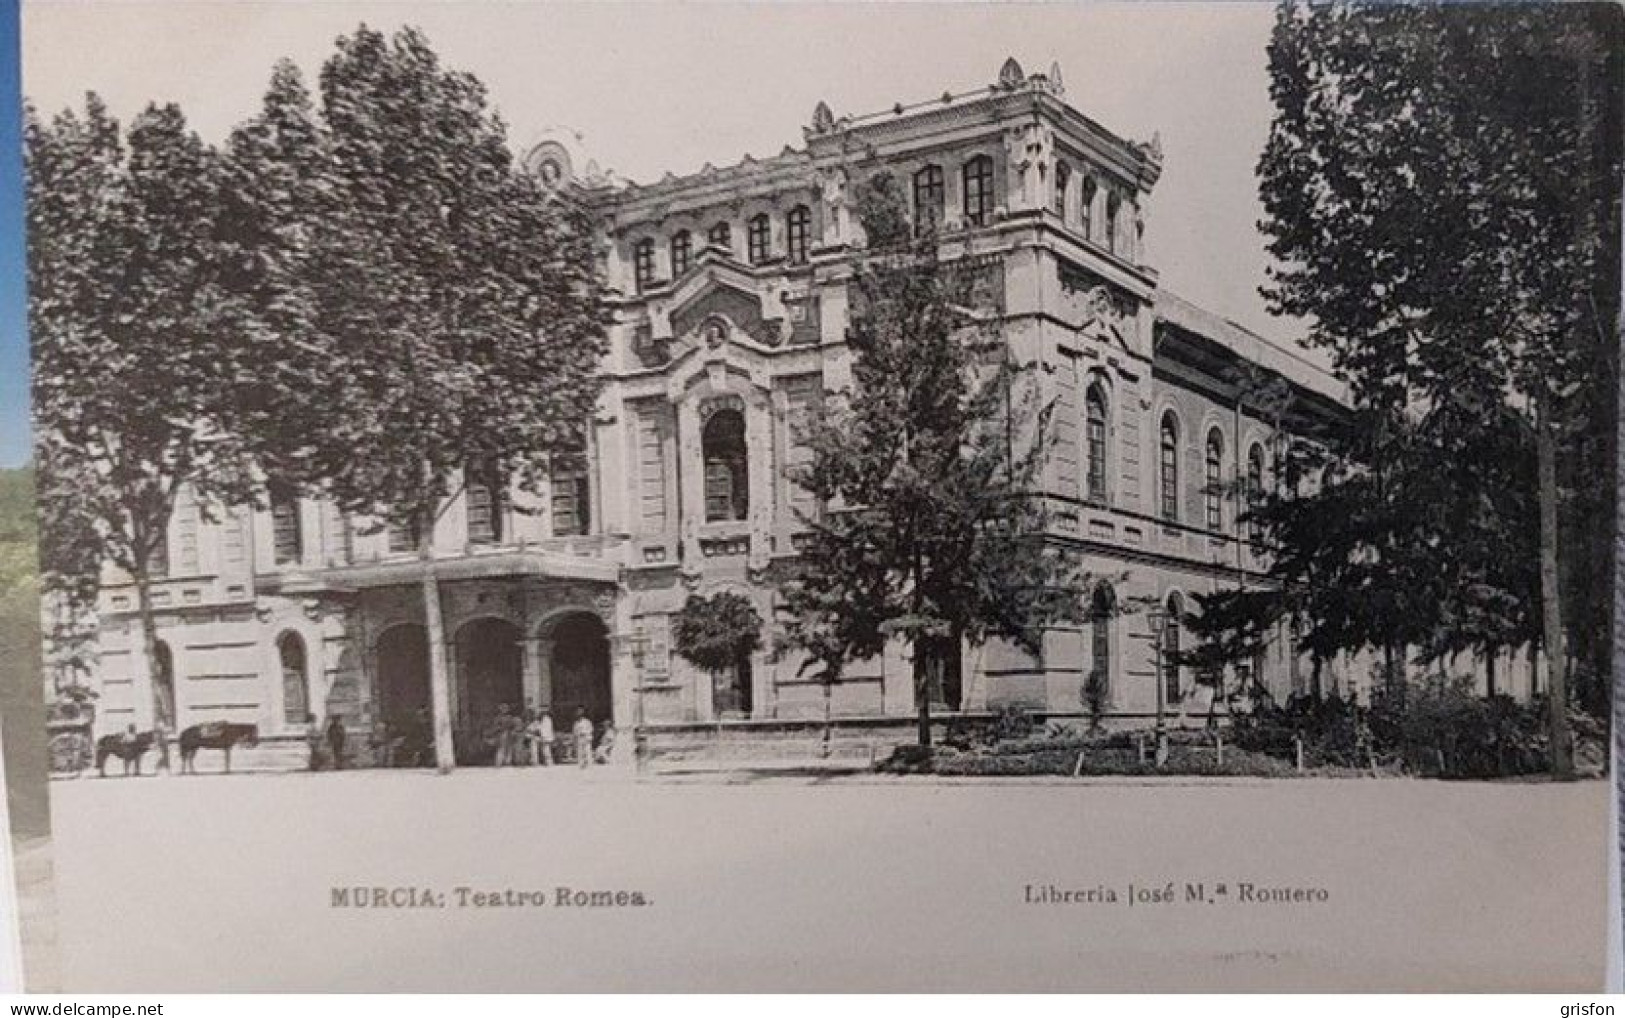 Murcia Teatro Romea Theater - Murcia